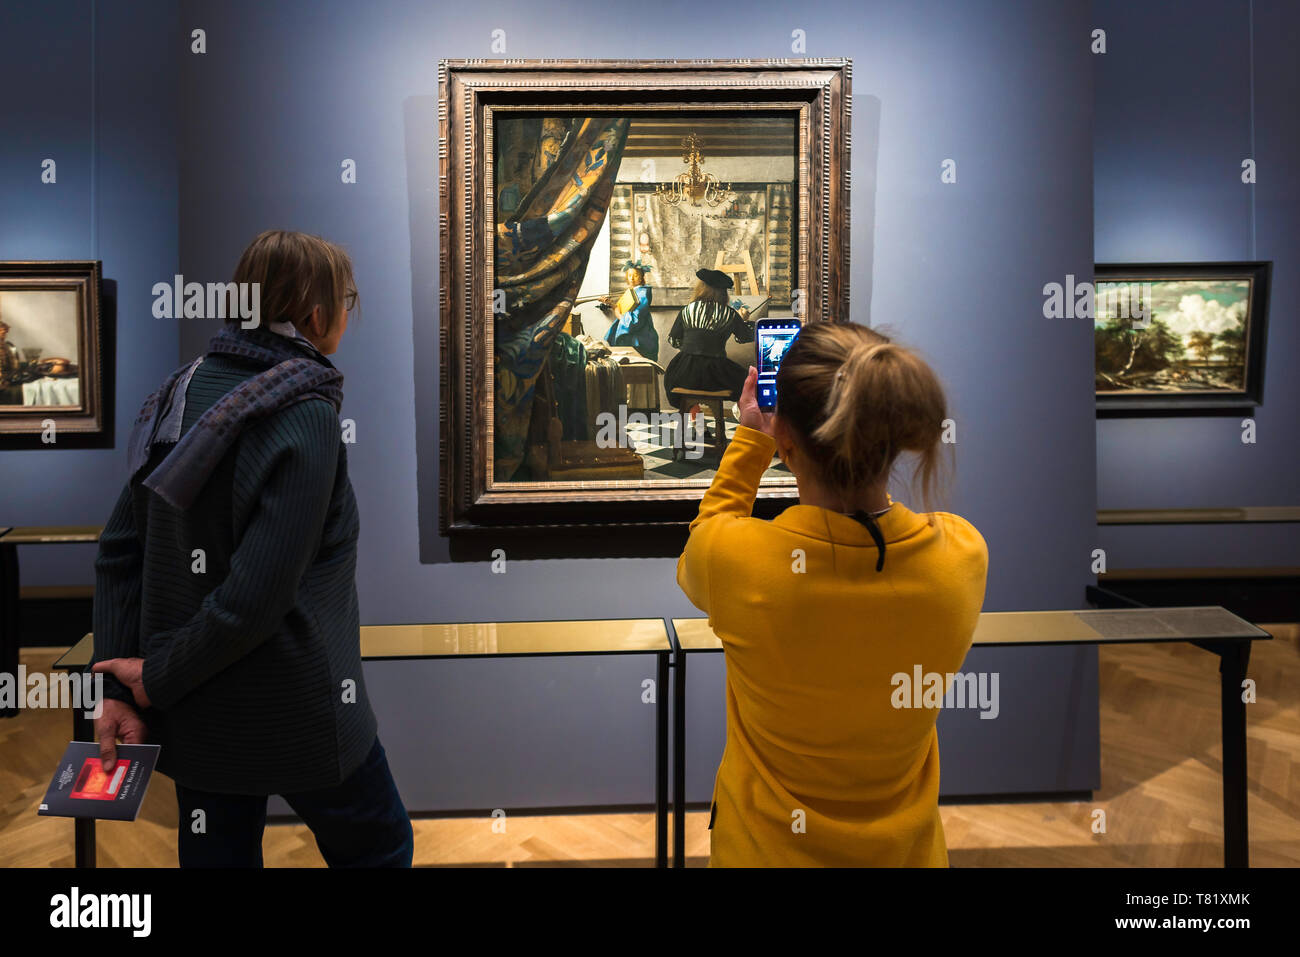 Vermeer art, vue arrière de deux touristes regardant l'art de la peinture par Jan Vermeer à l'intérieur du musée Kunsthistorisches à Vienne, Autriche. Banque D'Images